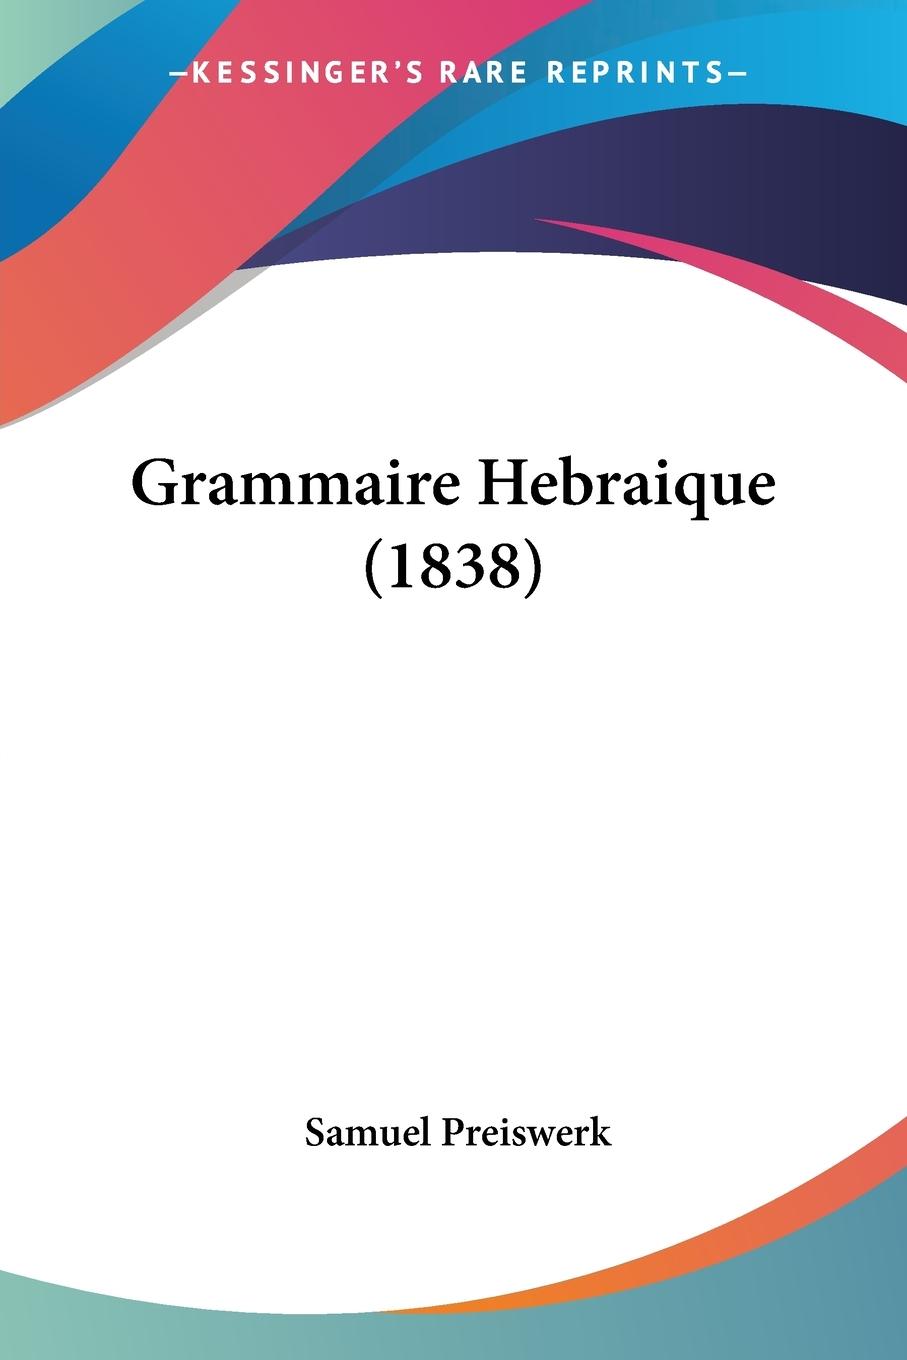 Grammaire Hebraique (1838) - Preiswerk, Samuel